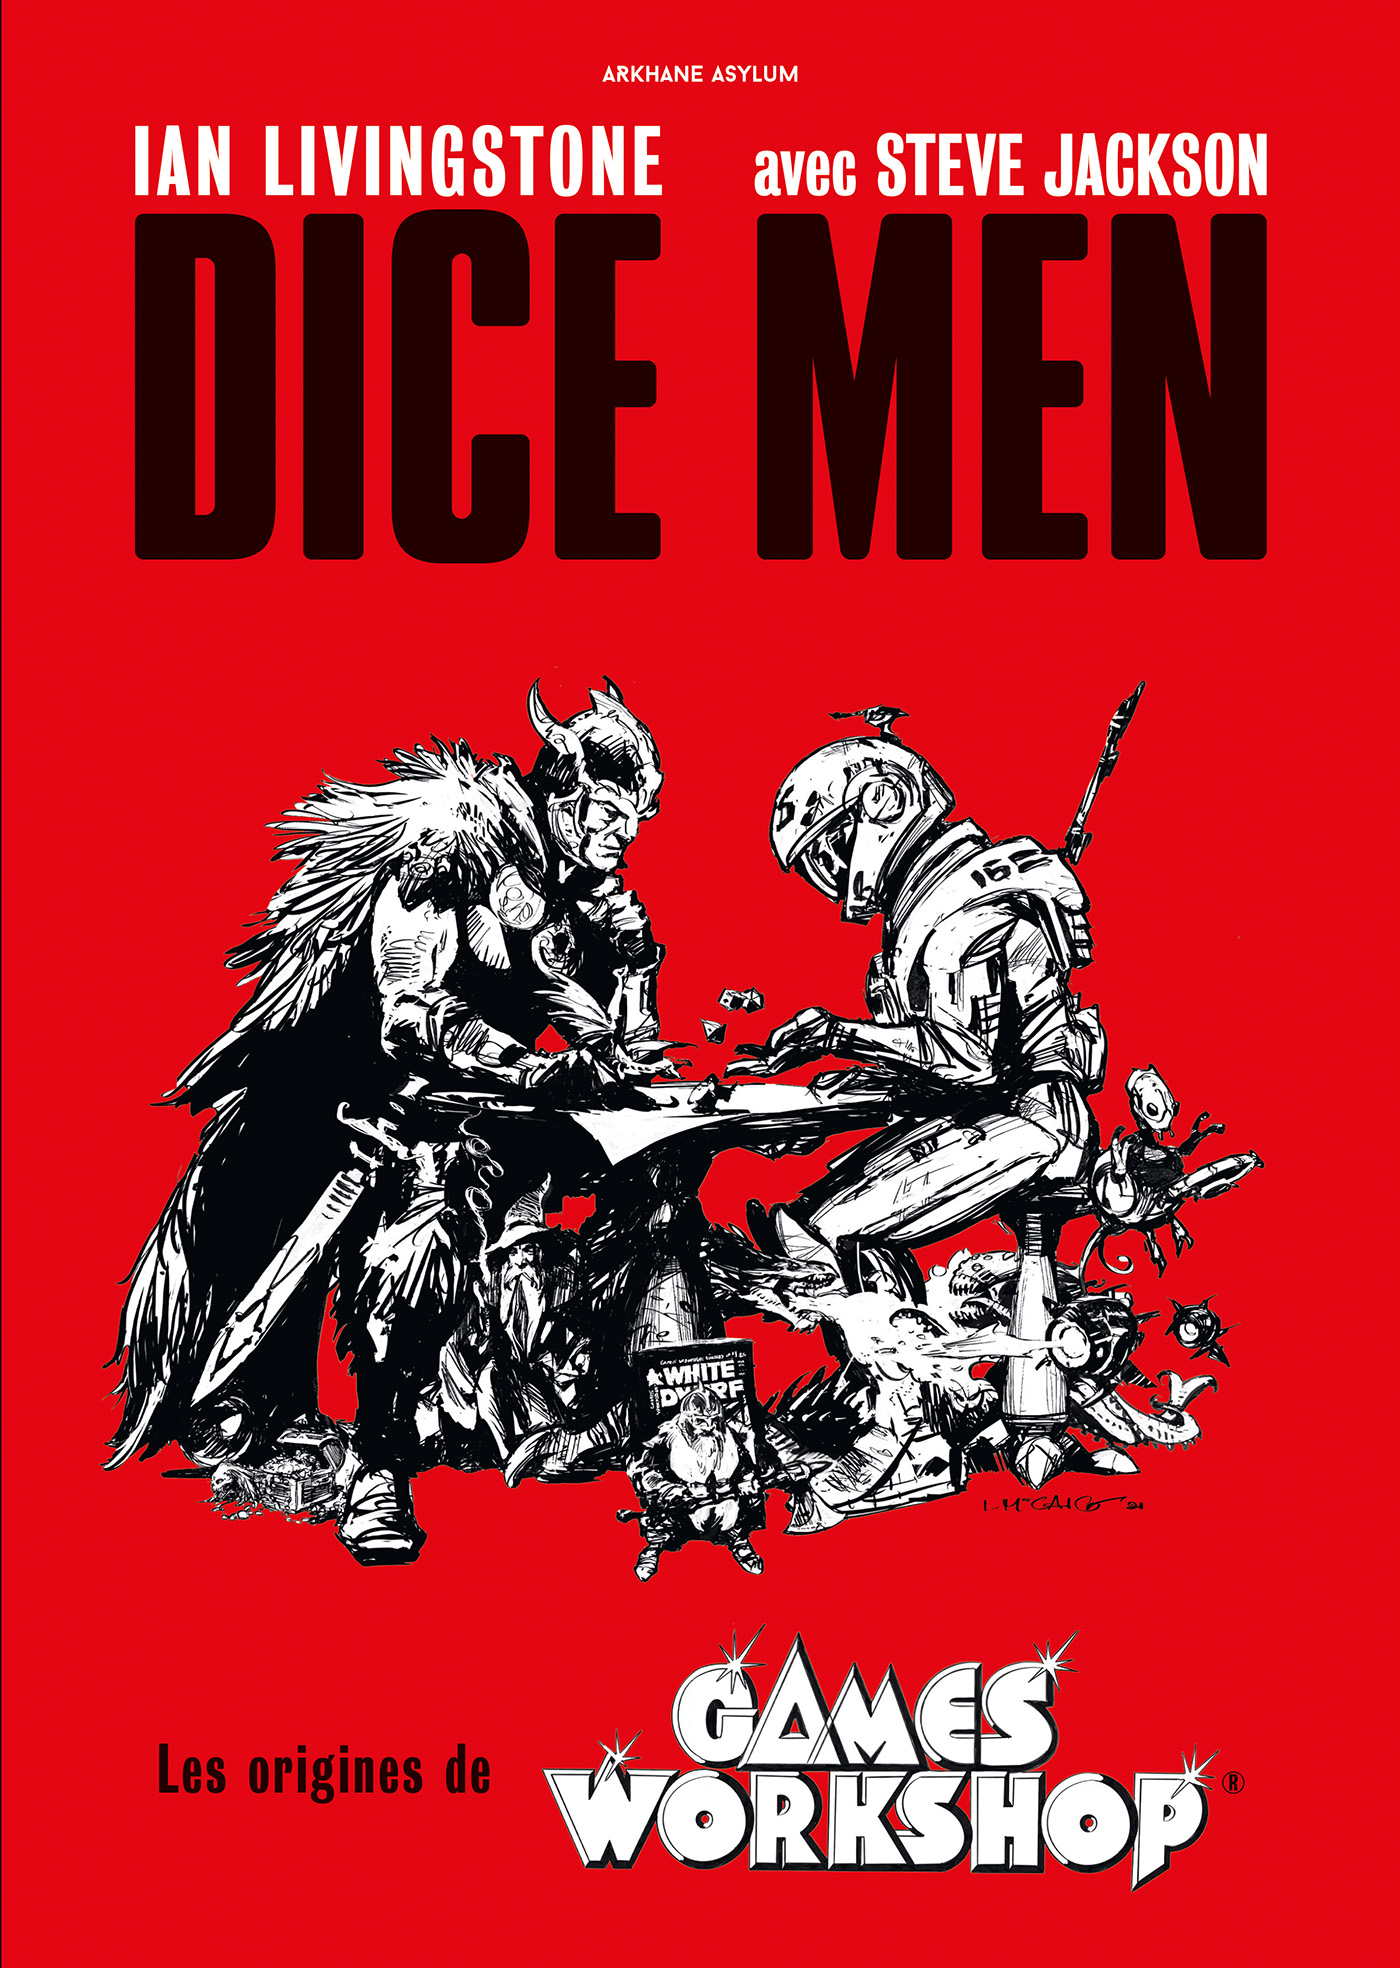 Dice Men, les origines de Games Workshop